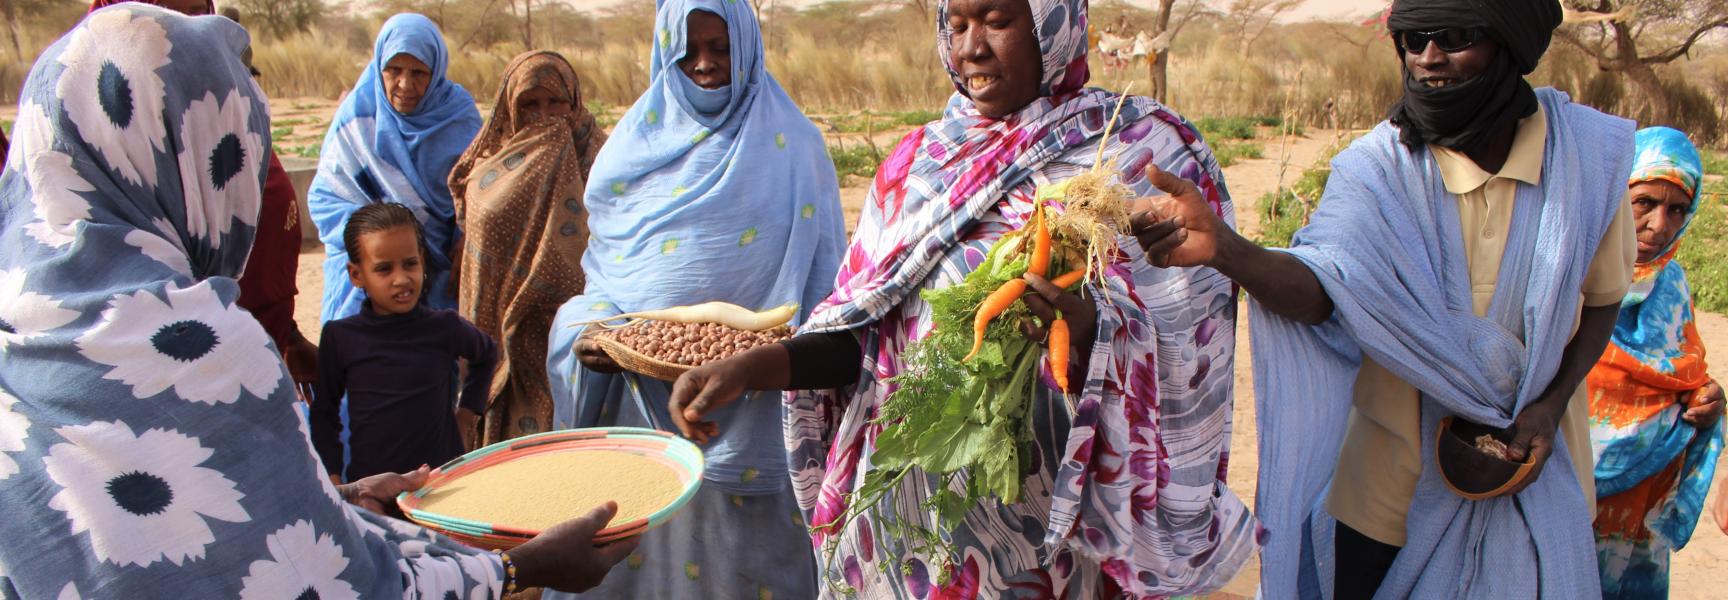 Des femmes vendant des légumes et des graines au marché de Tintane dans la région d'Hodh Ech Chargui à l'est de la Mauritanie